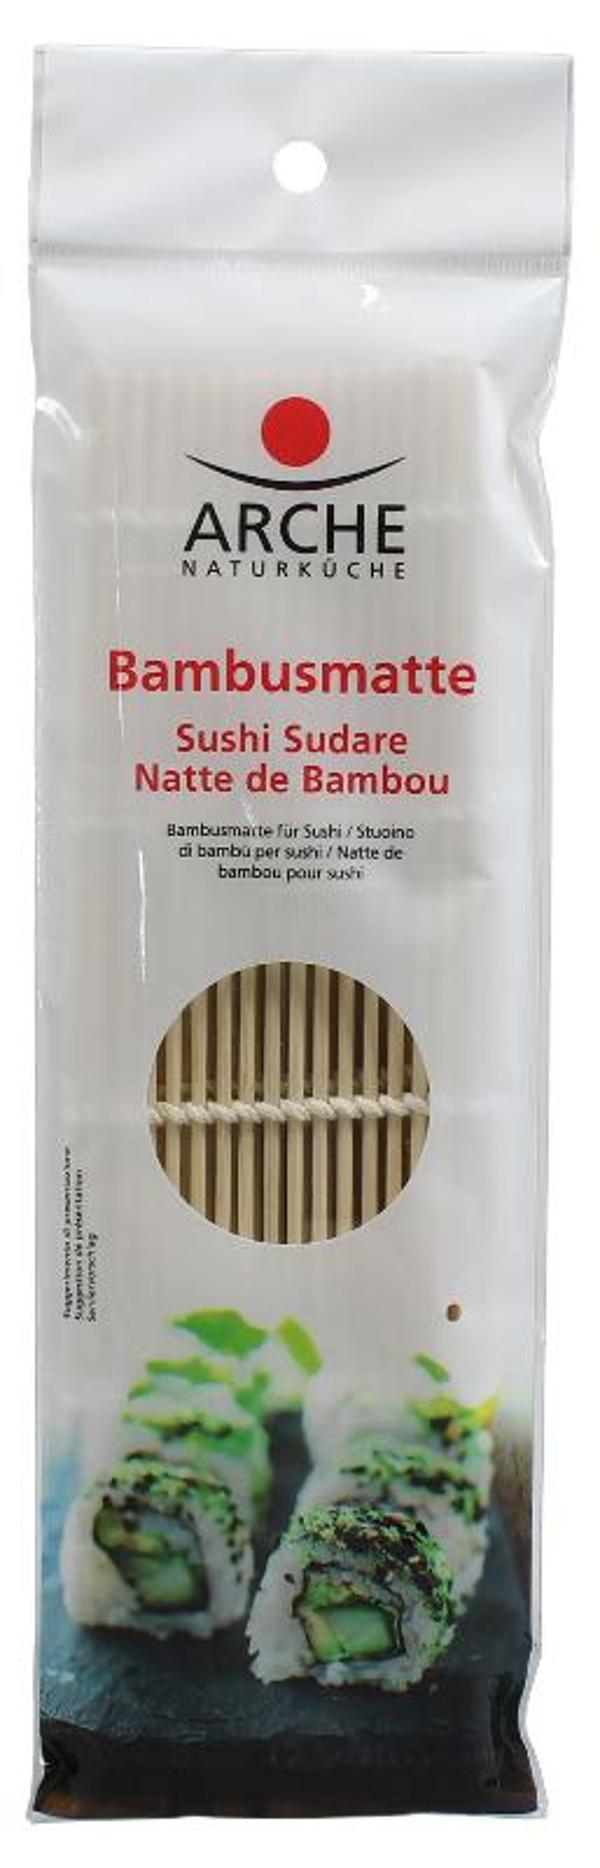 Produktfoto zu Bambusmatte für Sushi